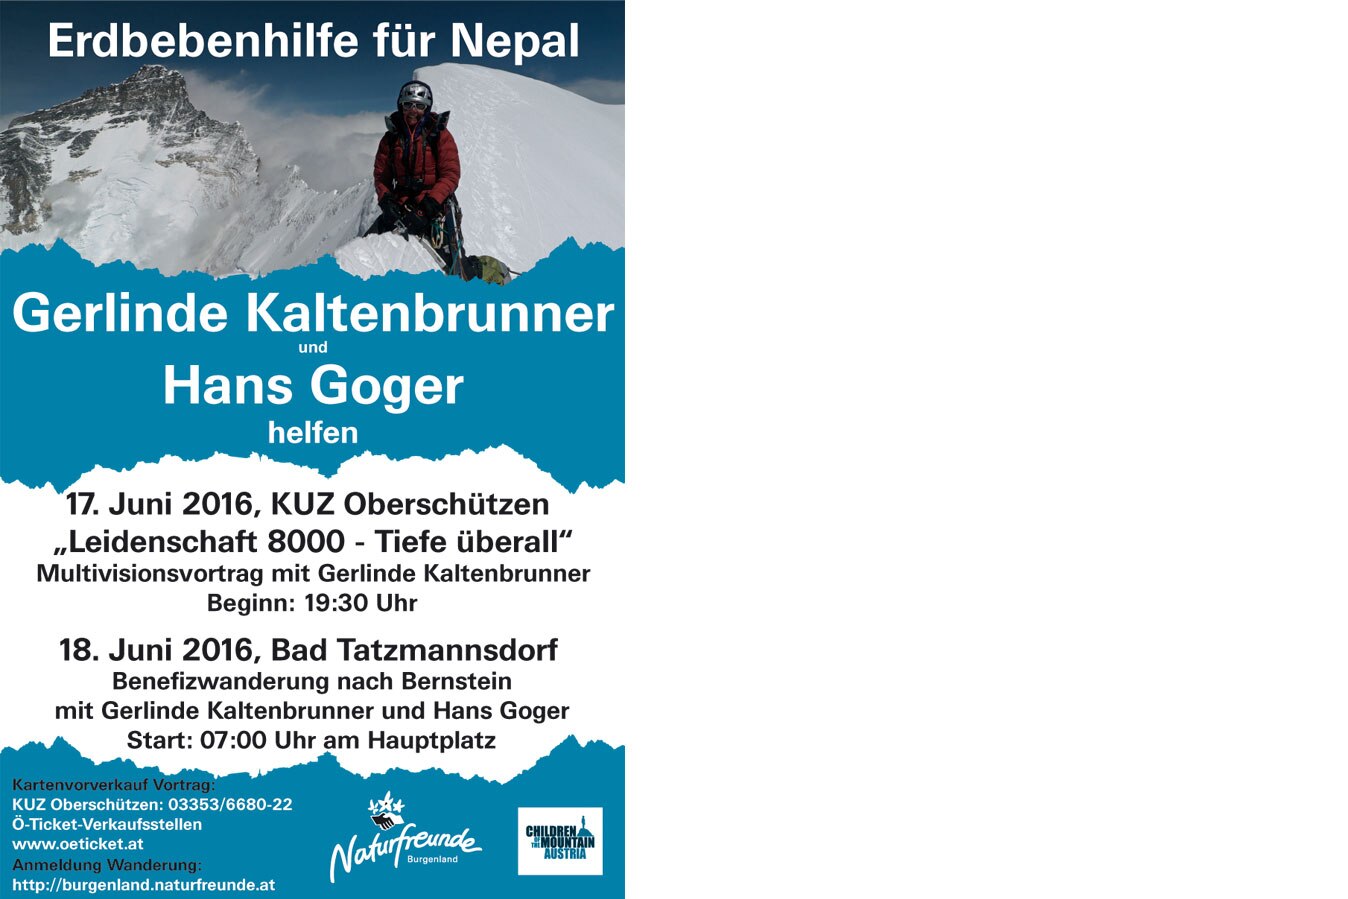 Erdbebenhilfe für Nepal: 2 Tage mit Gerlinde Kaltenbrunner und Hans Goger